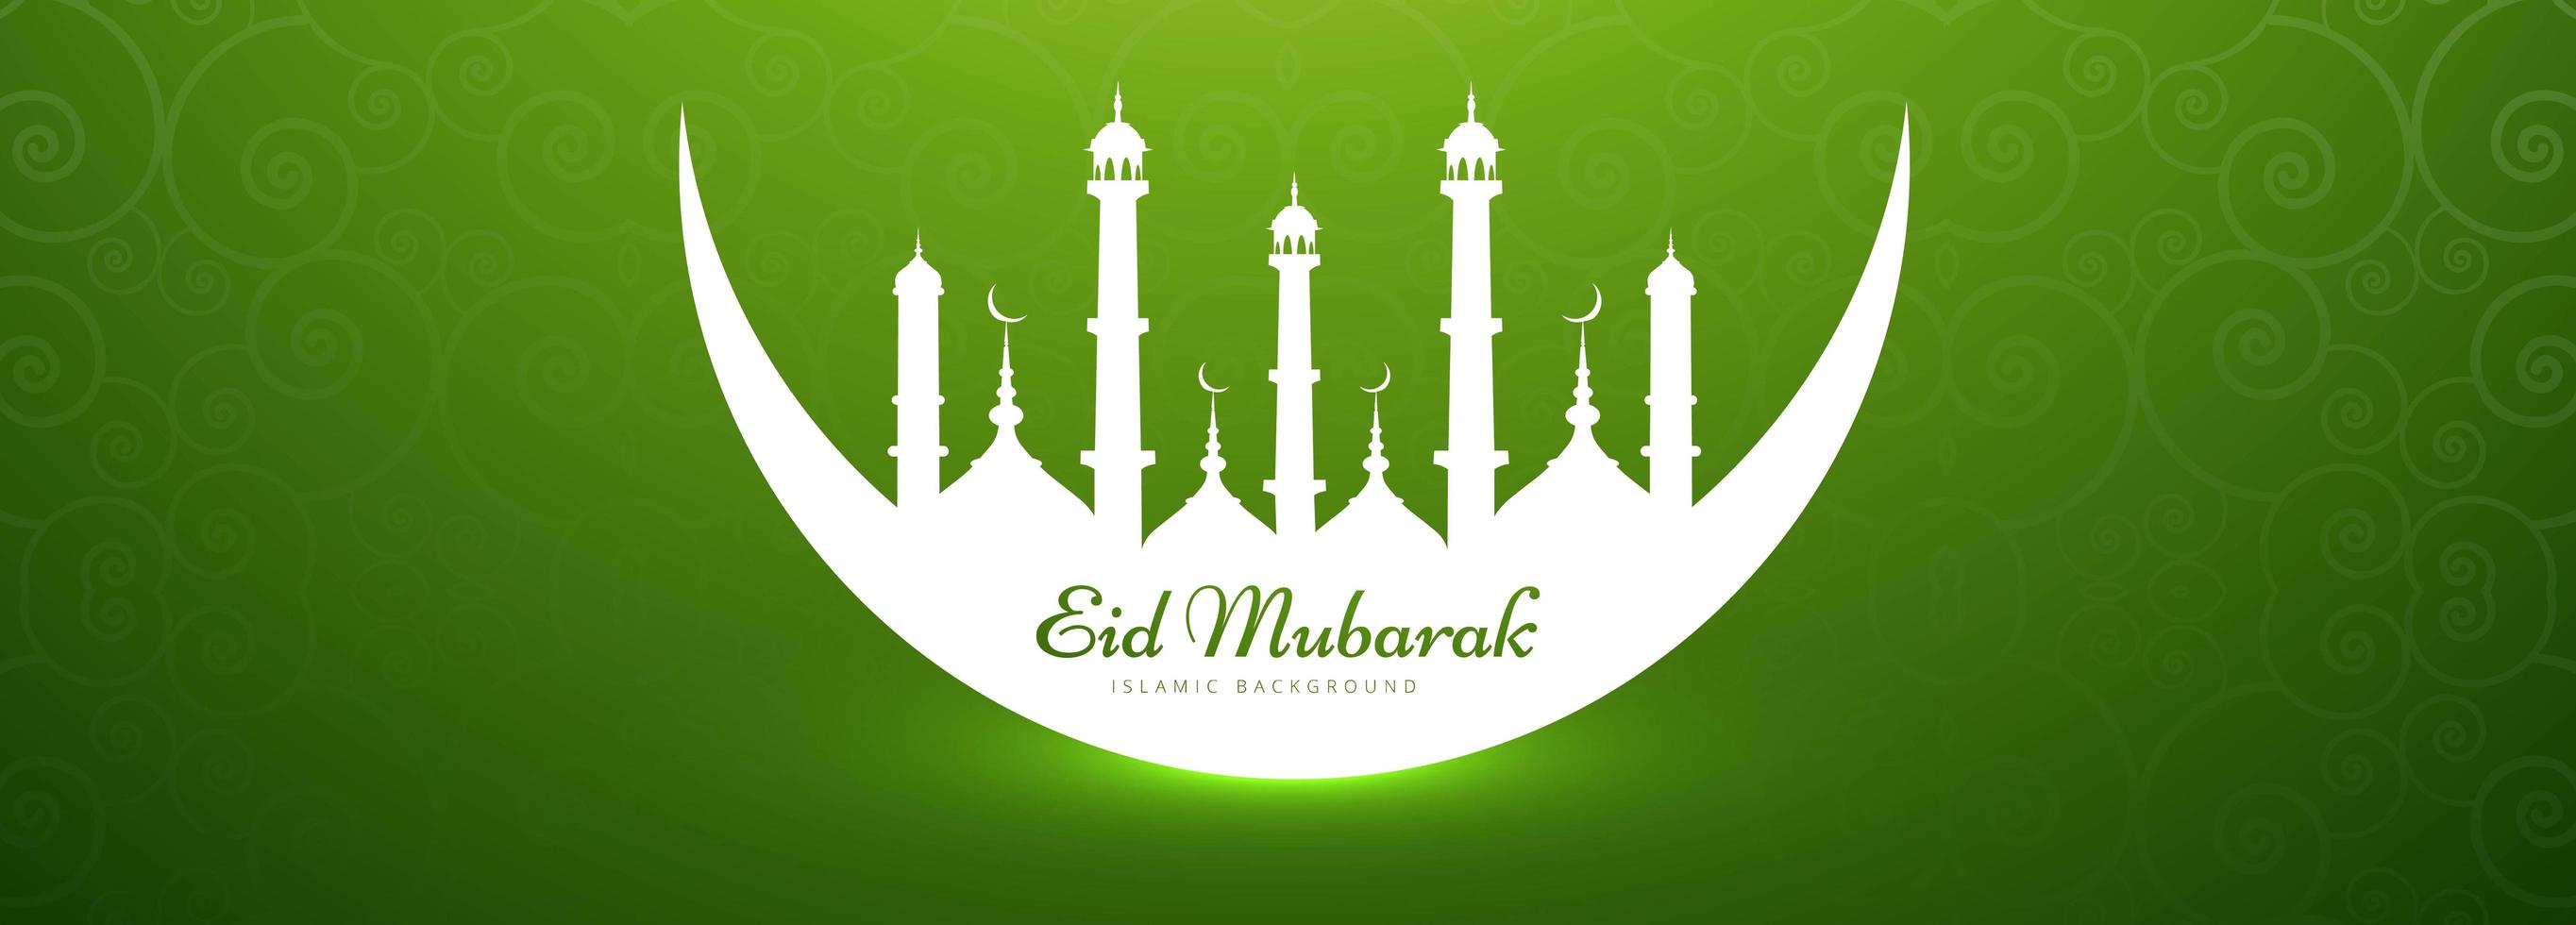 Eid Mubarak Banner mit Moschee in Halbmond Silhouette vektor